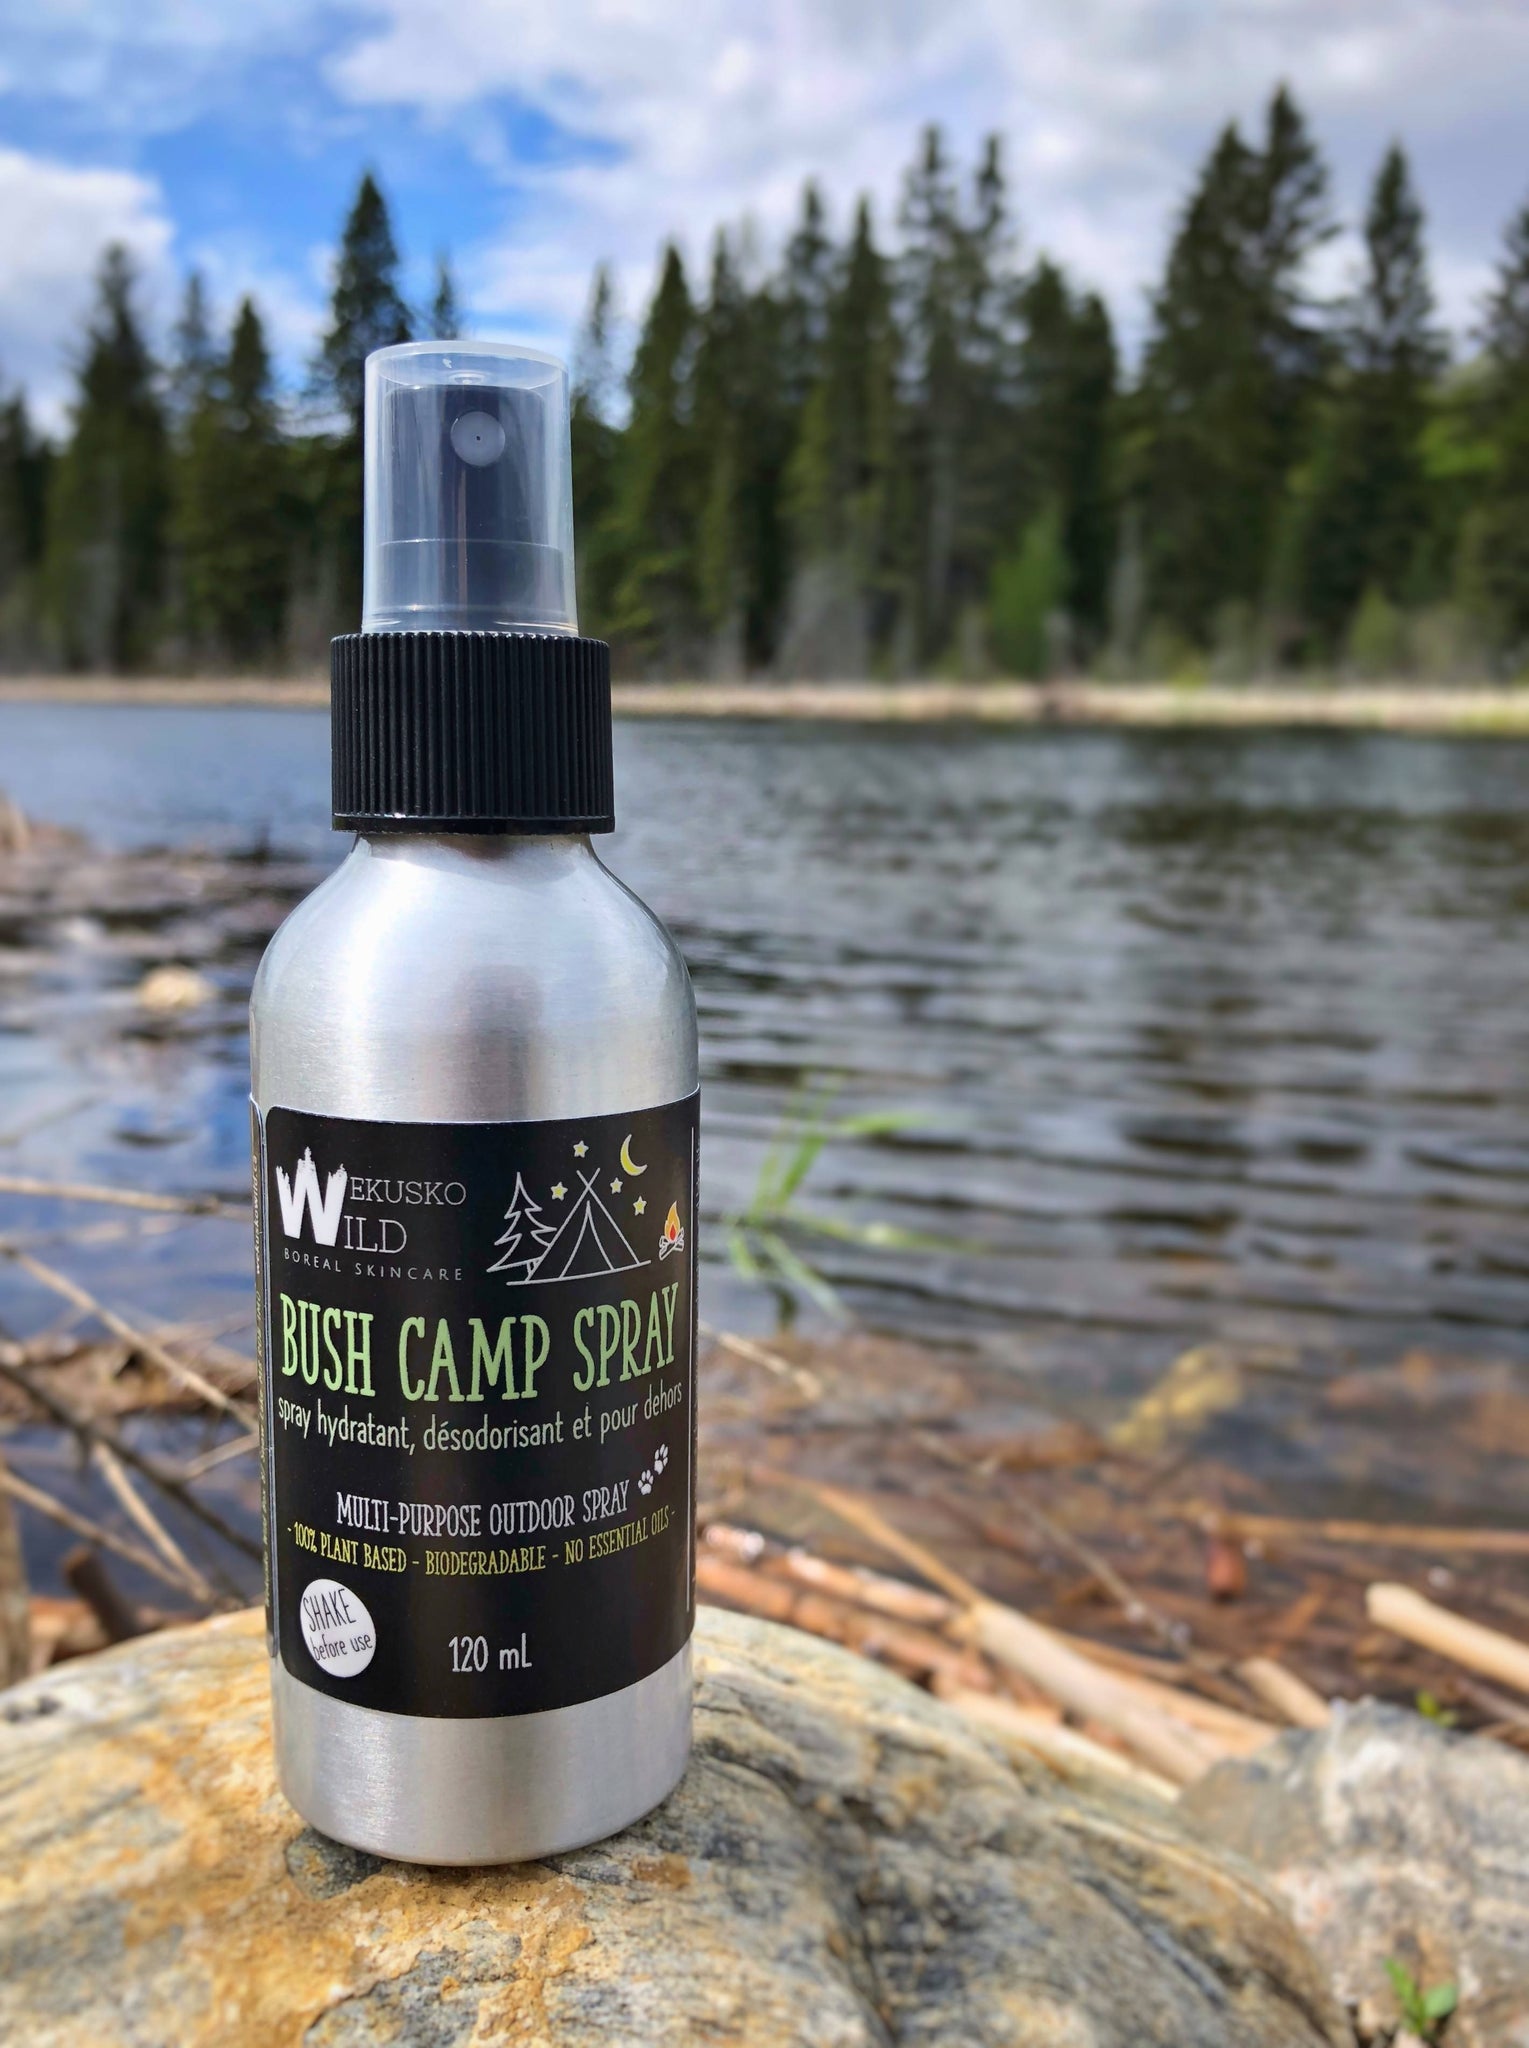 bush camp spray - WEKUSKO WILD Boreal Skincare